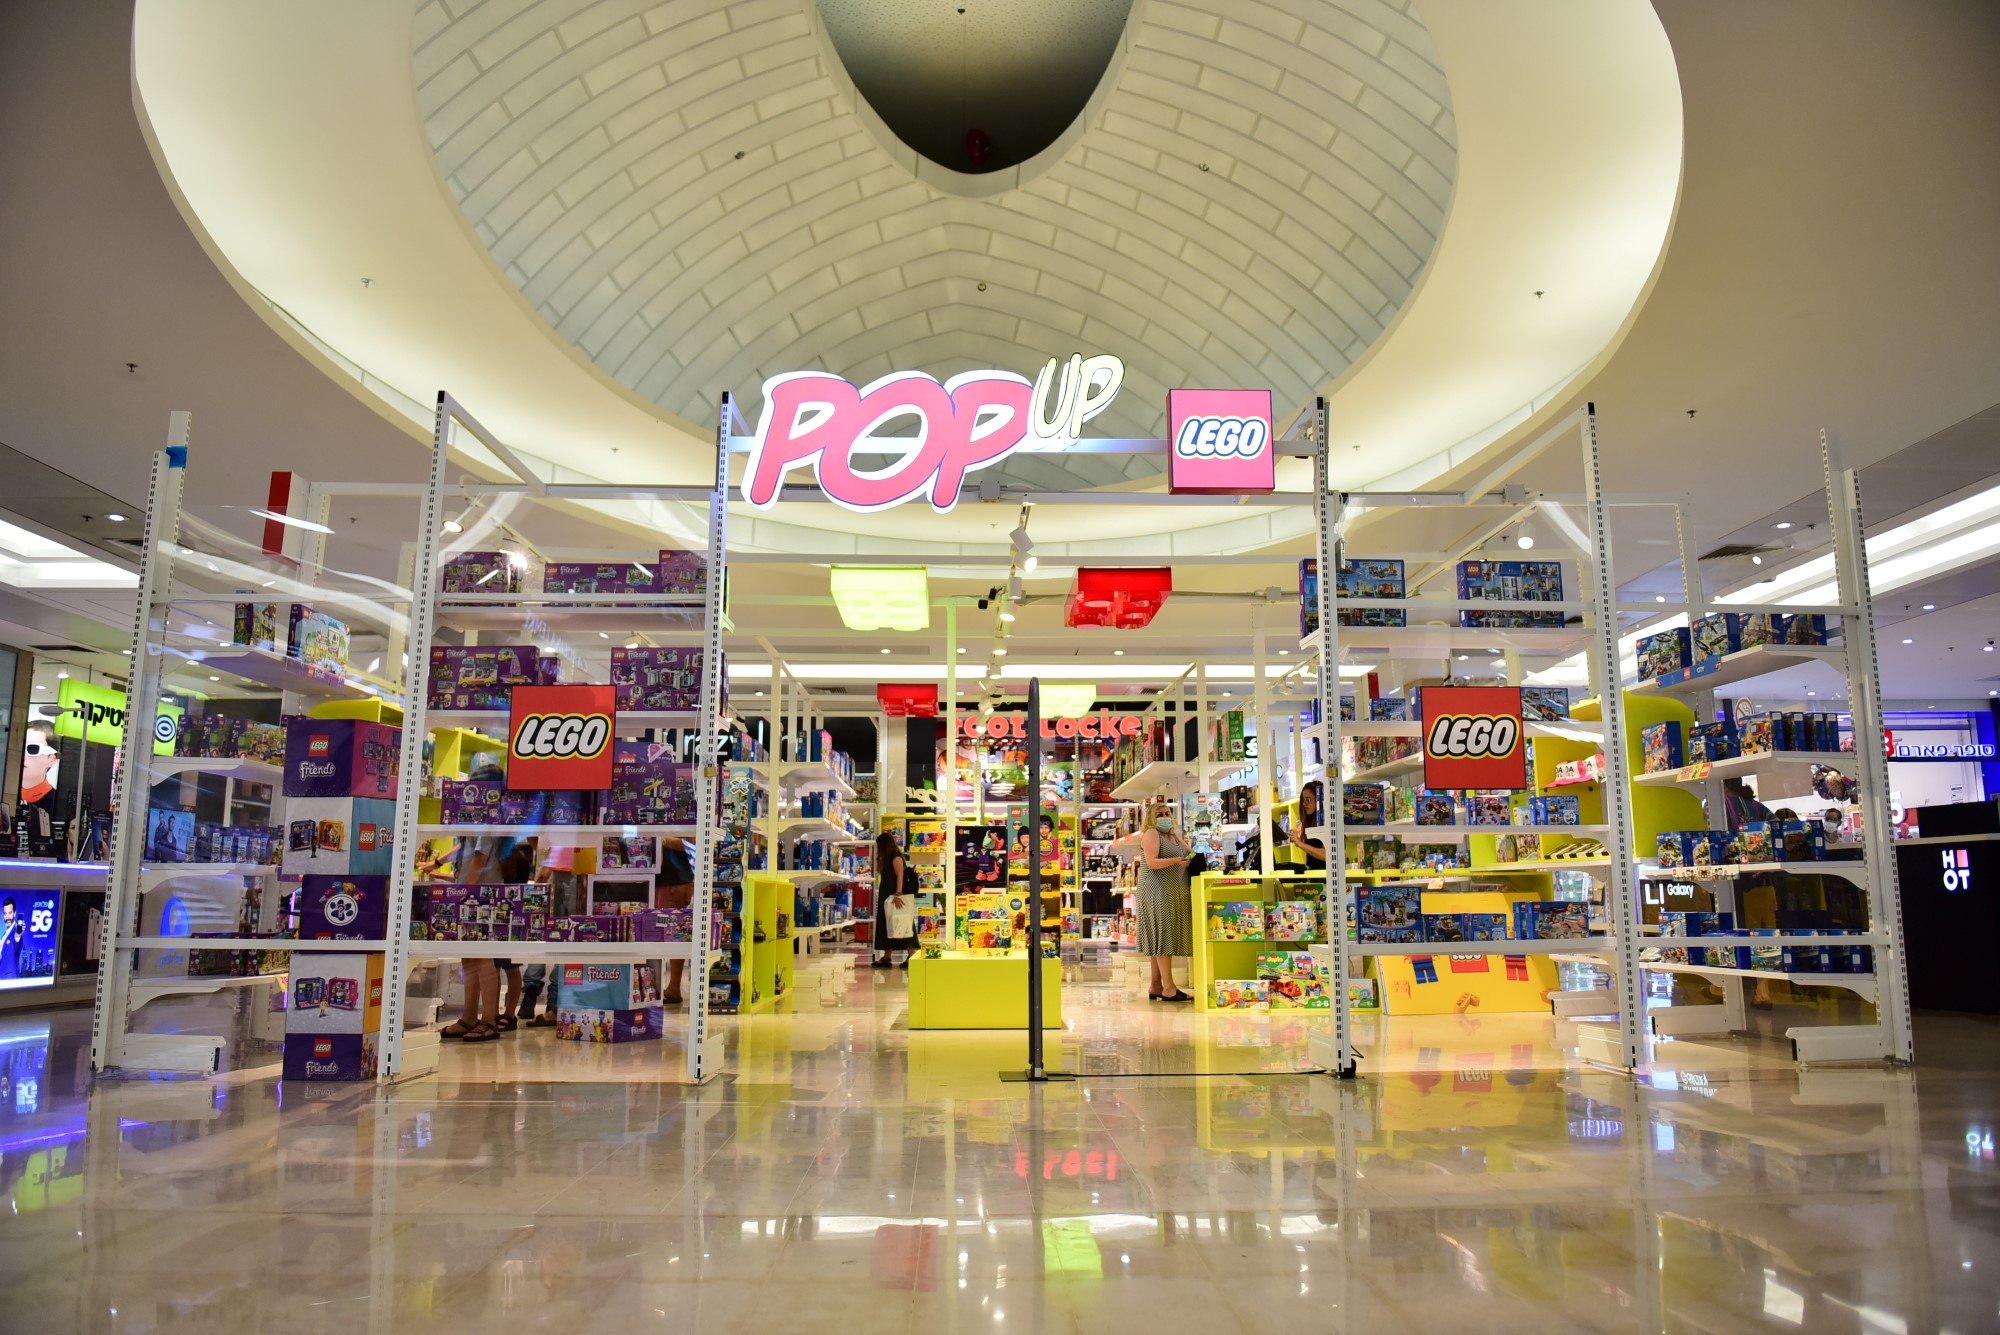 חדש בישראל:  חנות פופ אפ של המותג LEGO   נפתחה בעופר הקריון